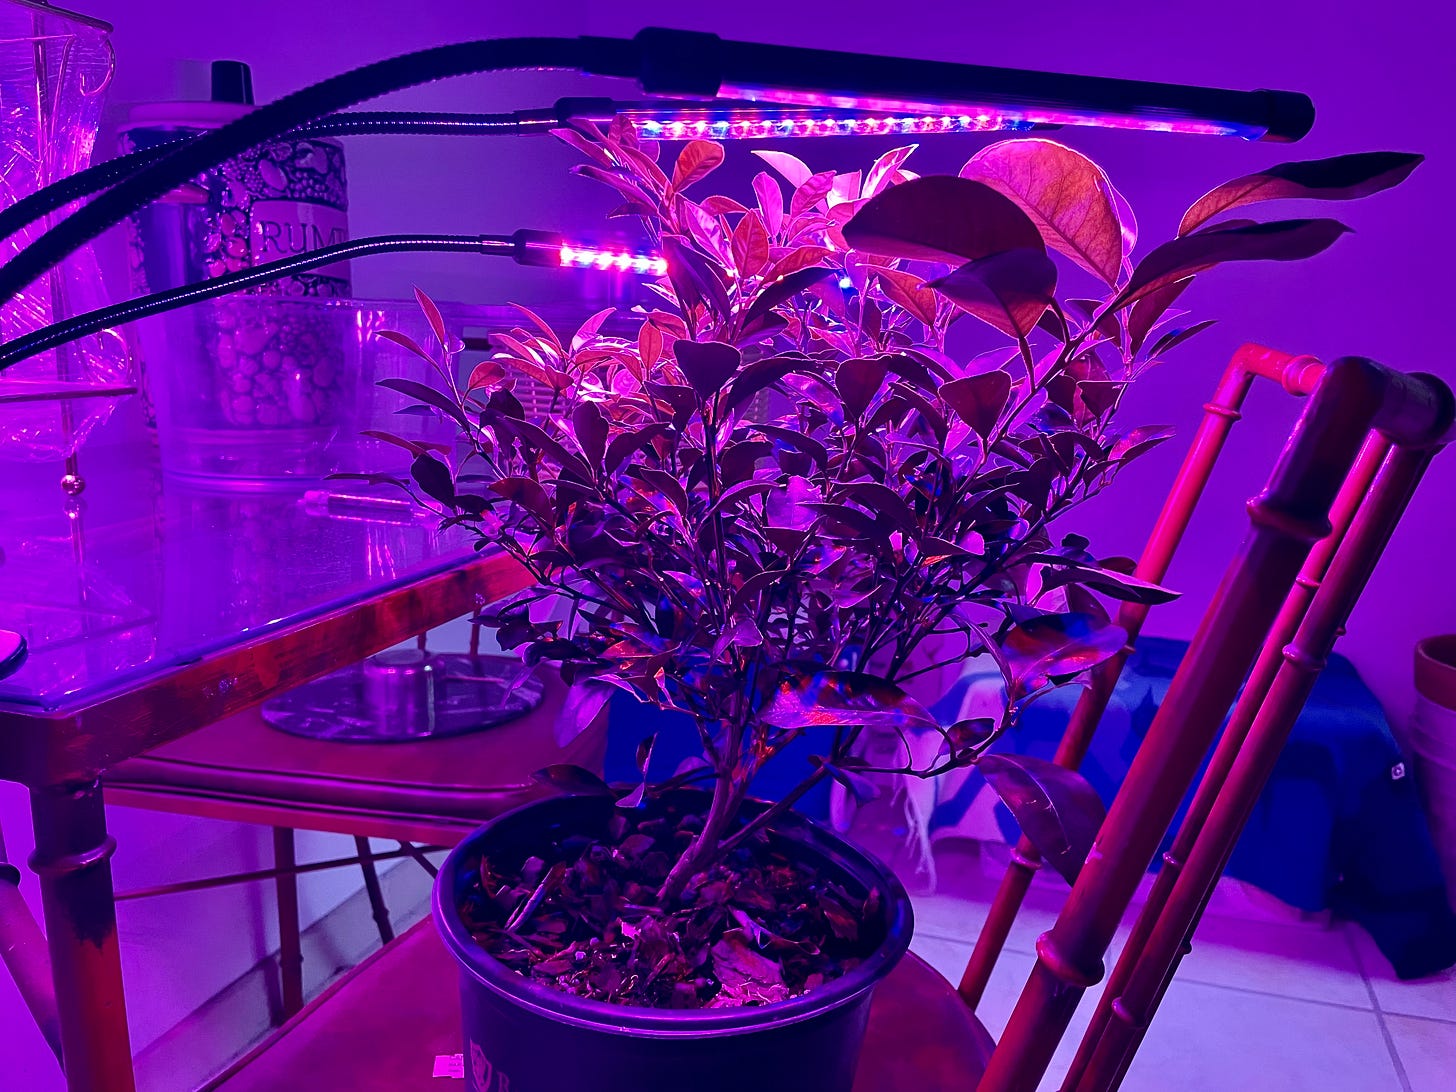 Image description: Photo of calamansi lime tree under purple grow lights. End image description.